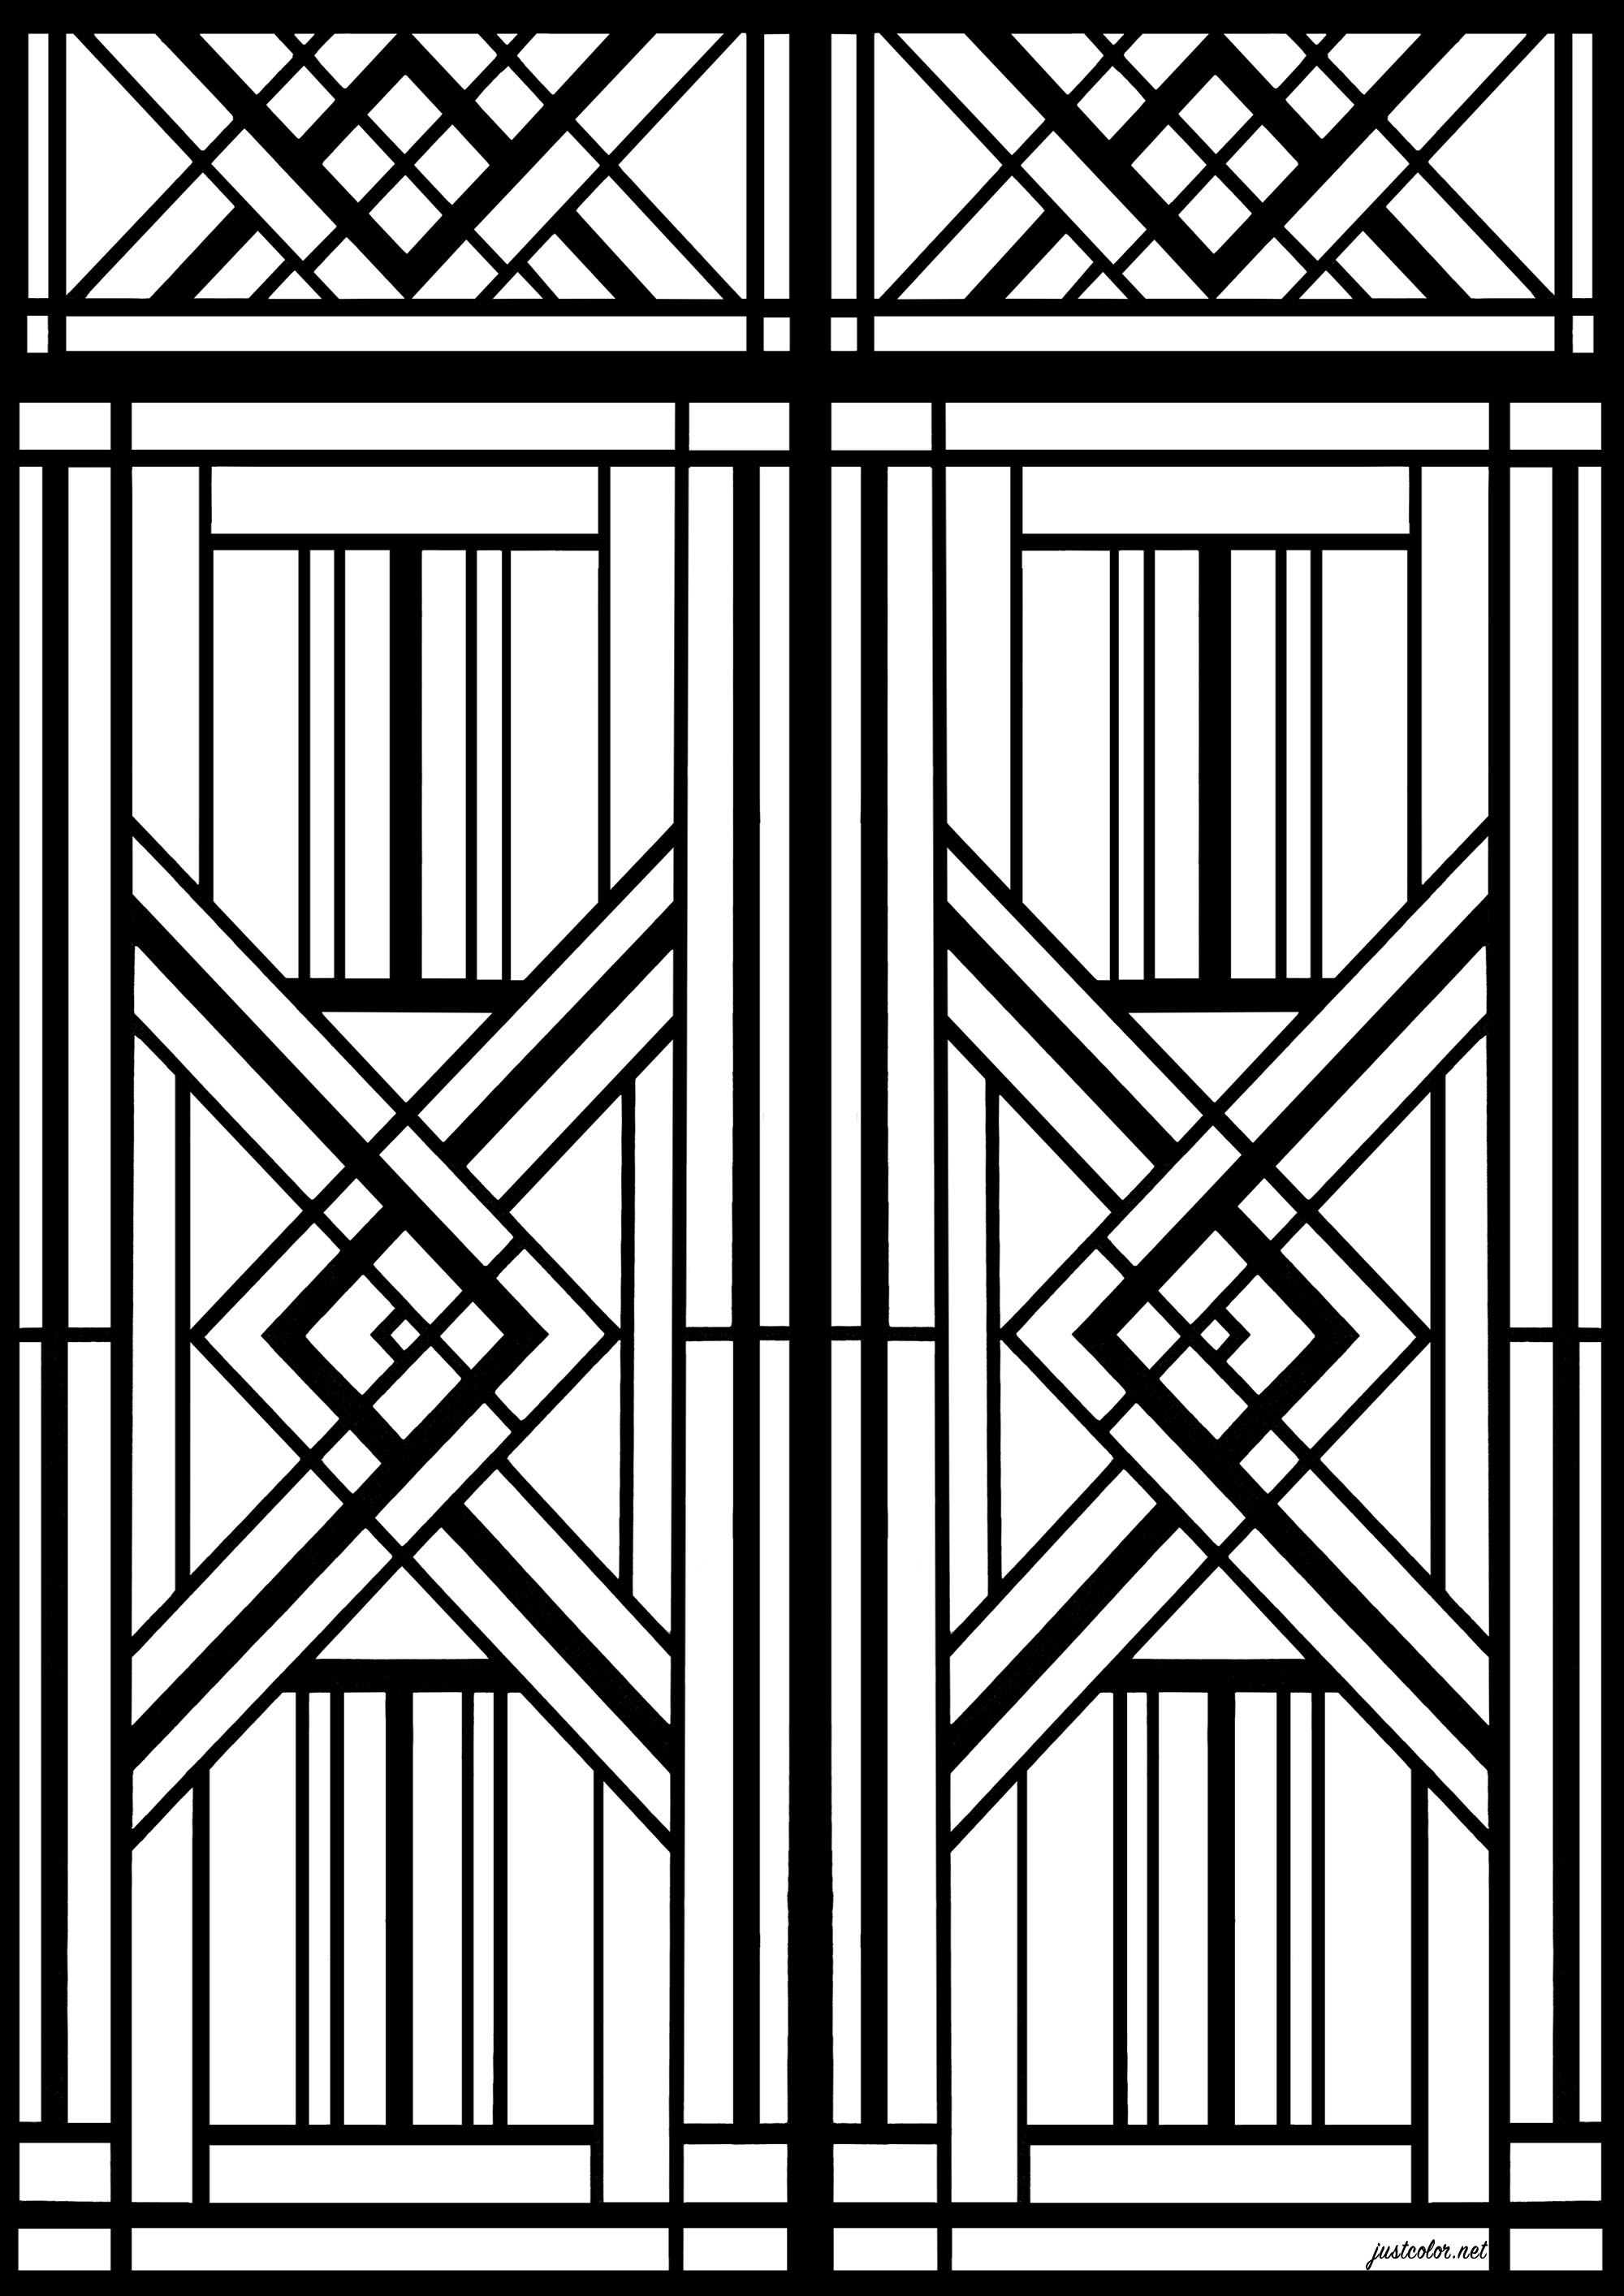 Reproduction en coloriage d'une porte de style Art Deco de Paris. Les portes Art déco de Paris sont des exemples remarquables d'architecture de style Art déco, qui a prospéré dans la ville au cours des années 1920 et 1930. Caractérisées par des motifs géométriques élaborés, elles sont un exemple de la façon dont l'architecture peut être utilisée pour créer un sentiment d'élégance et de sophistication.